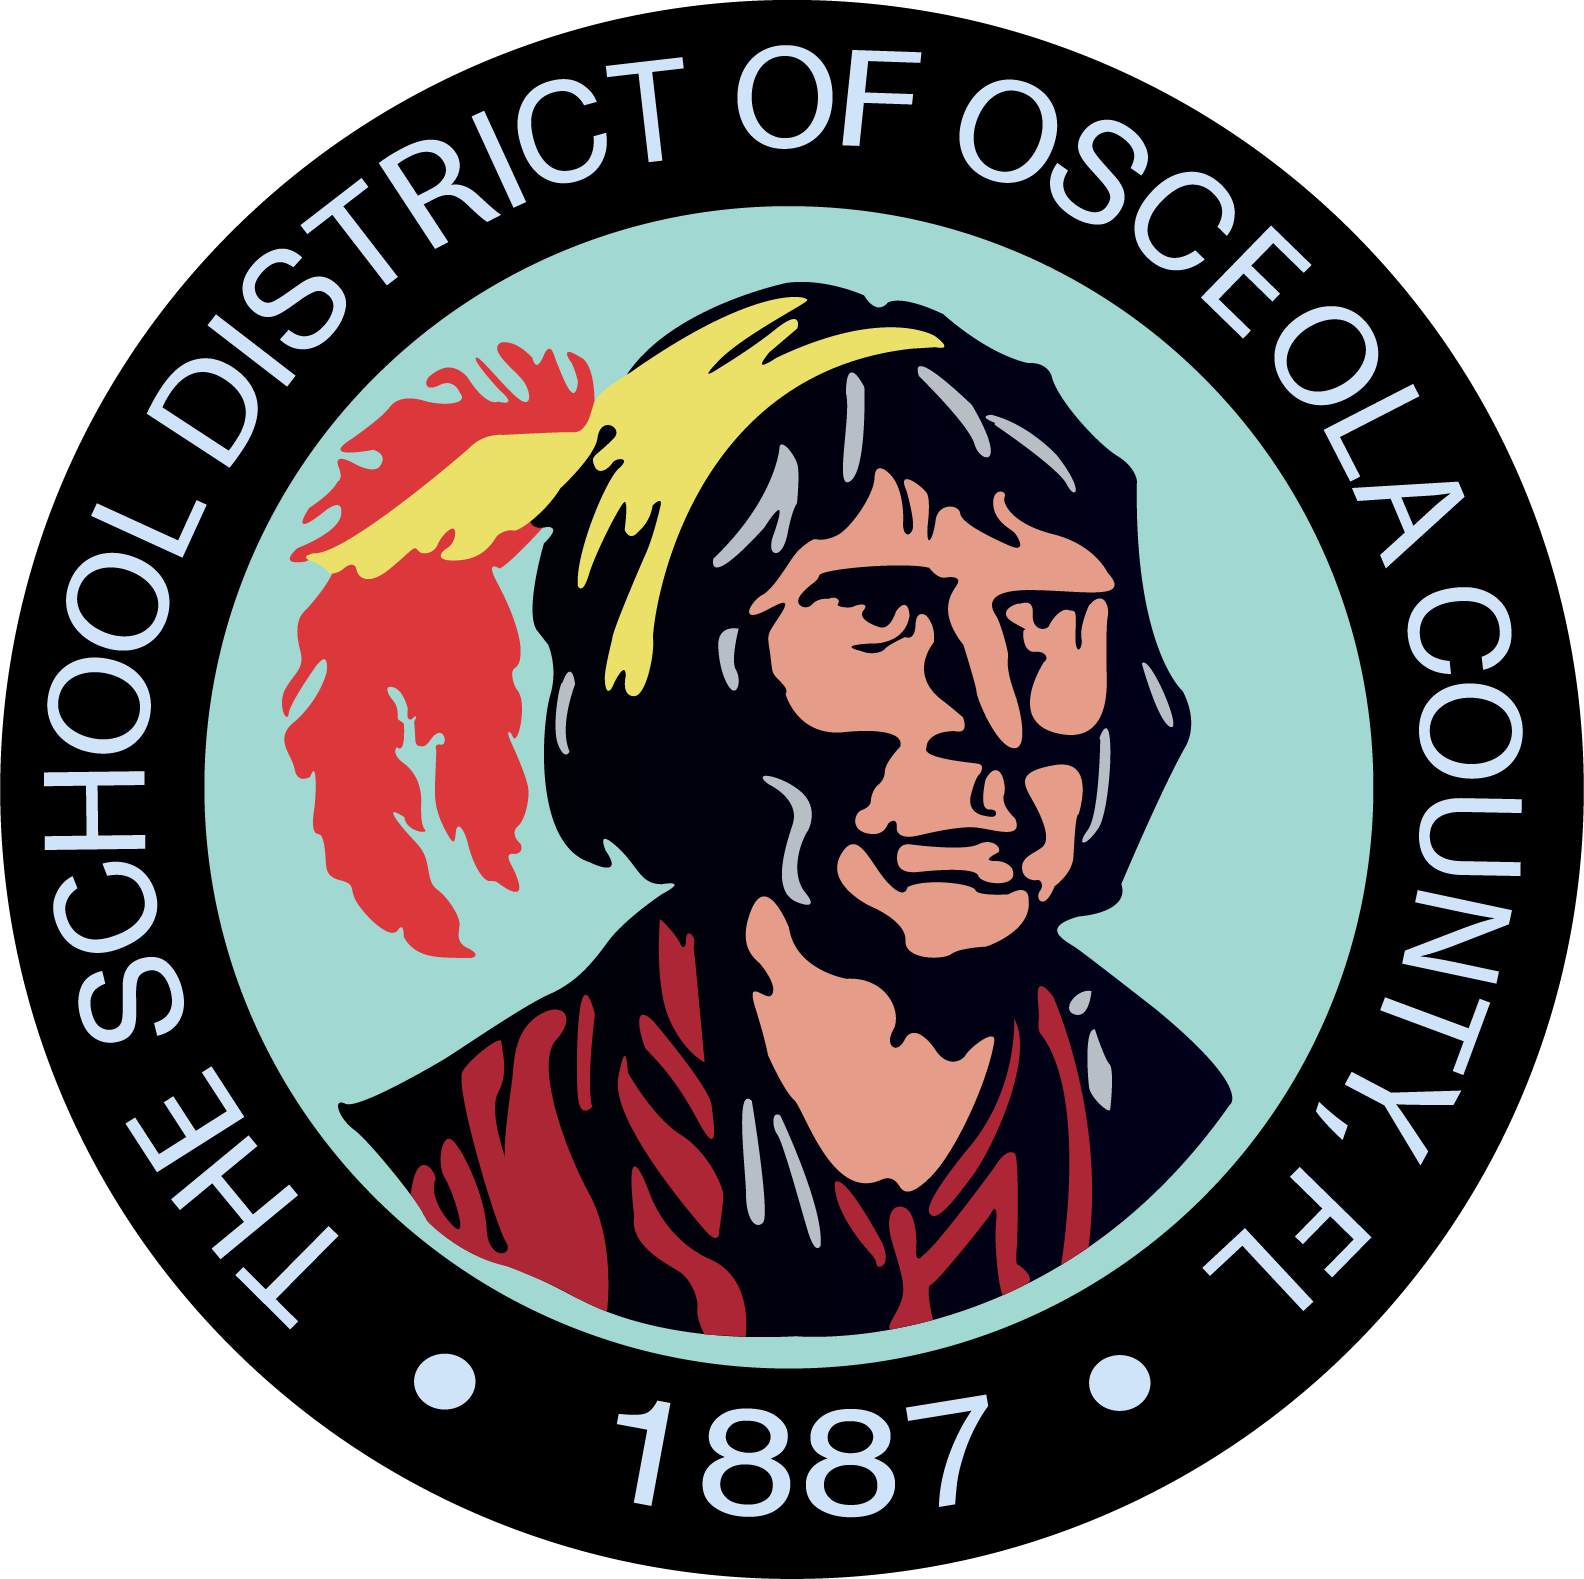 Osceola County Public Schools